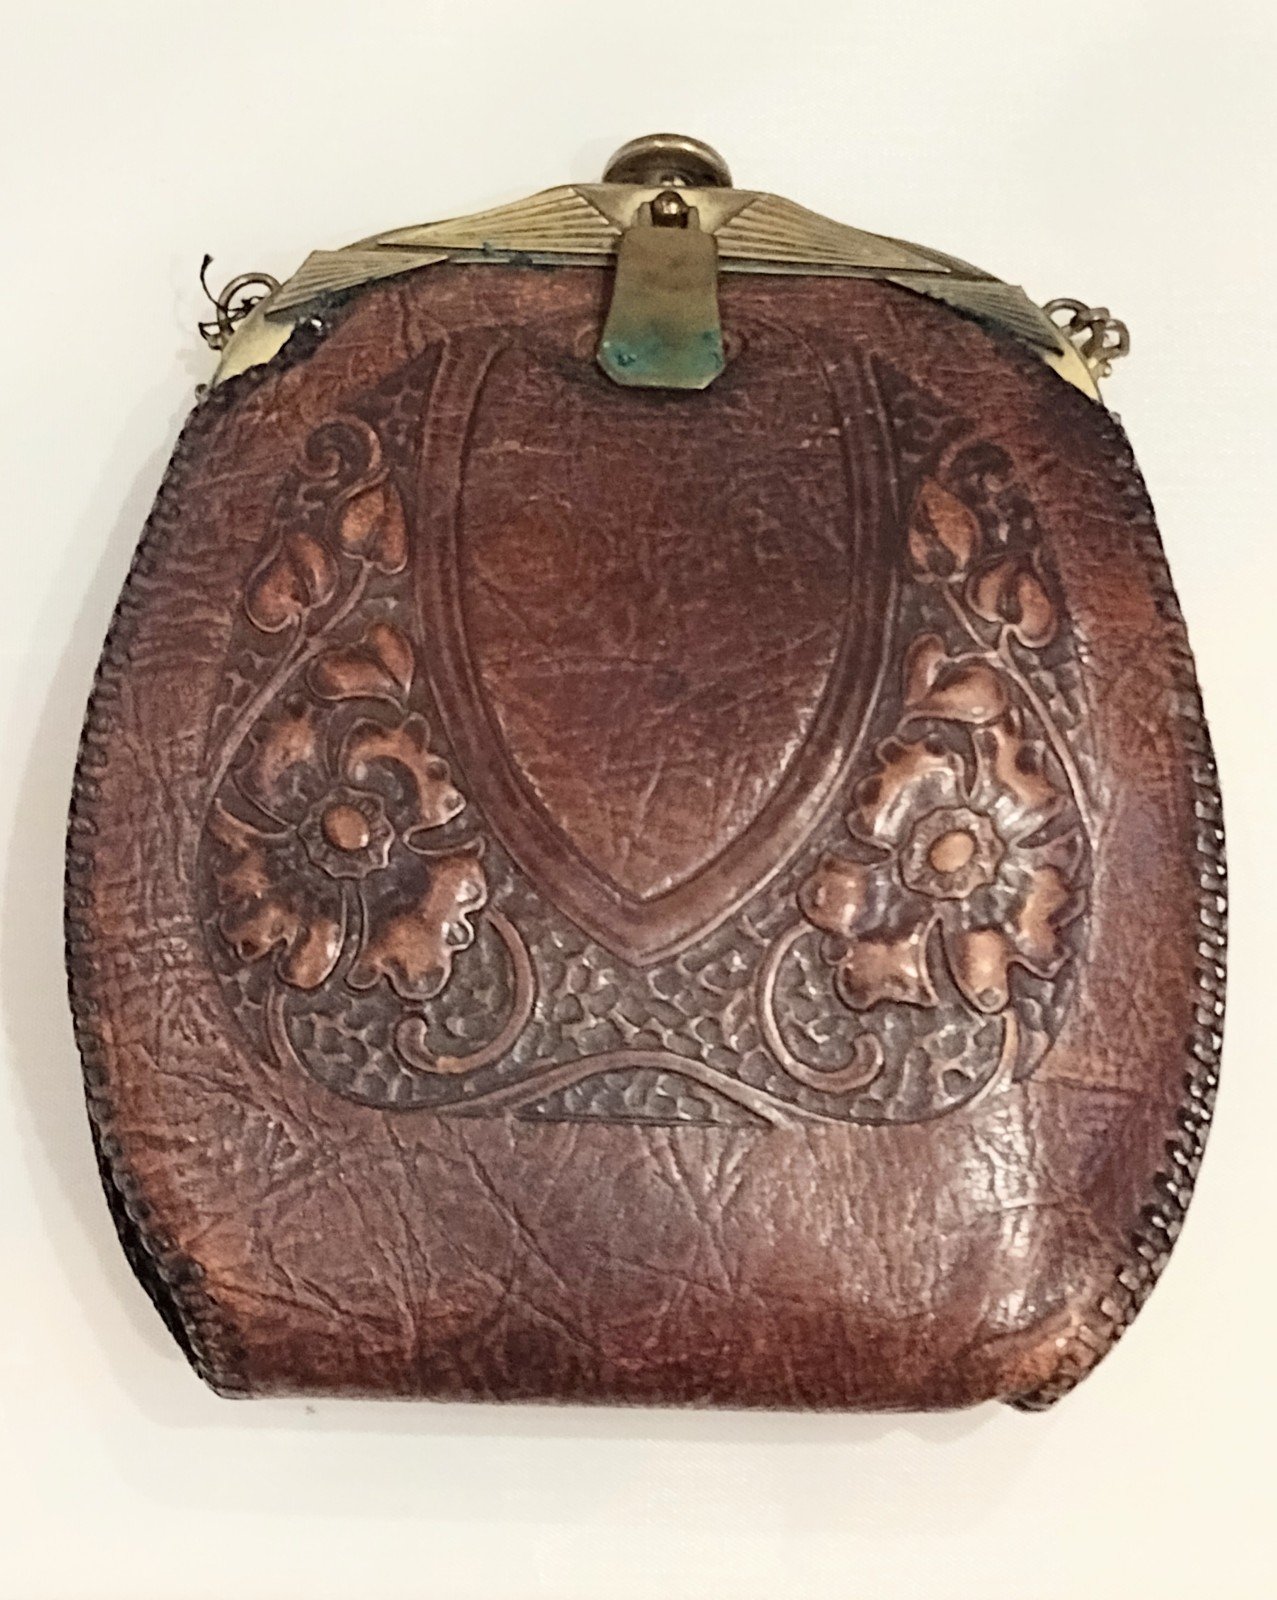 Antique Art Nouveau Tooled Leather Purse 9jY7k9Ds1